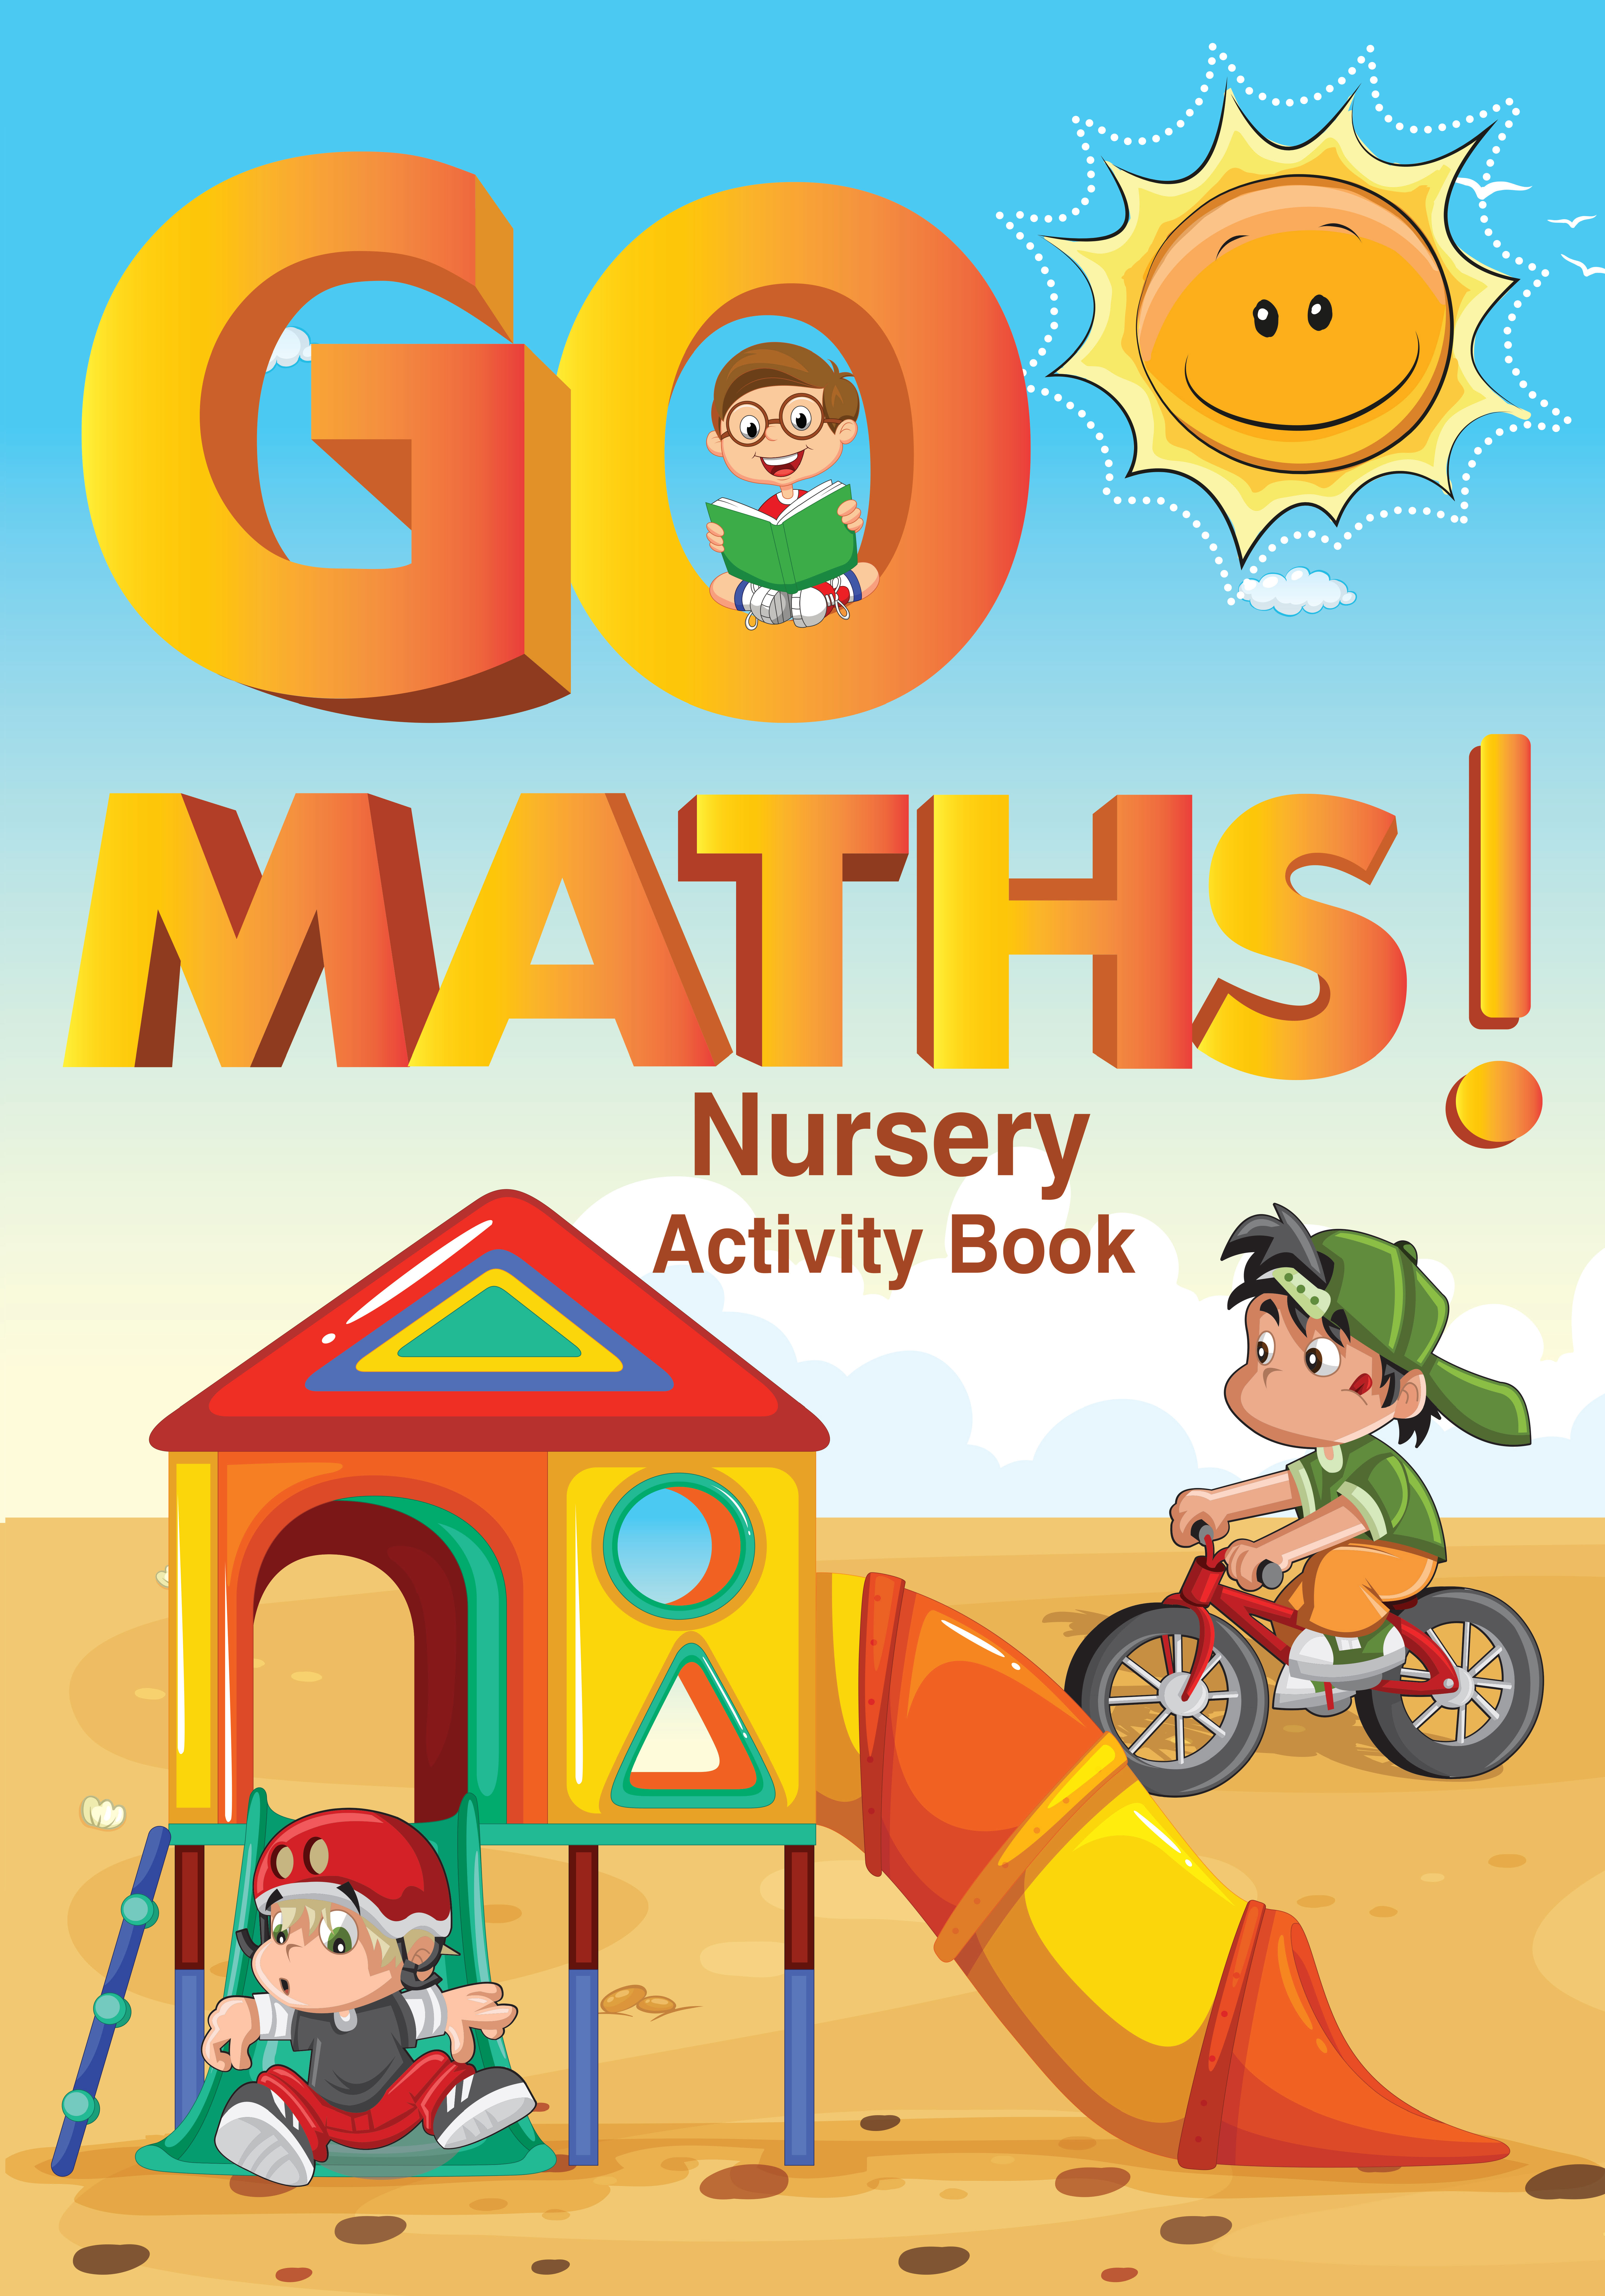 Go Maths Nursery Activity